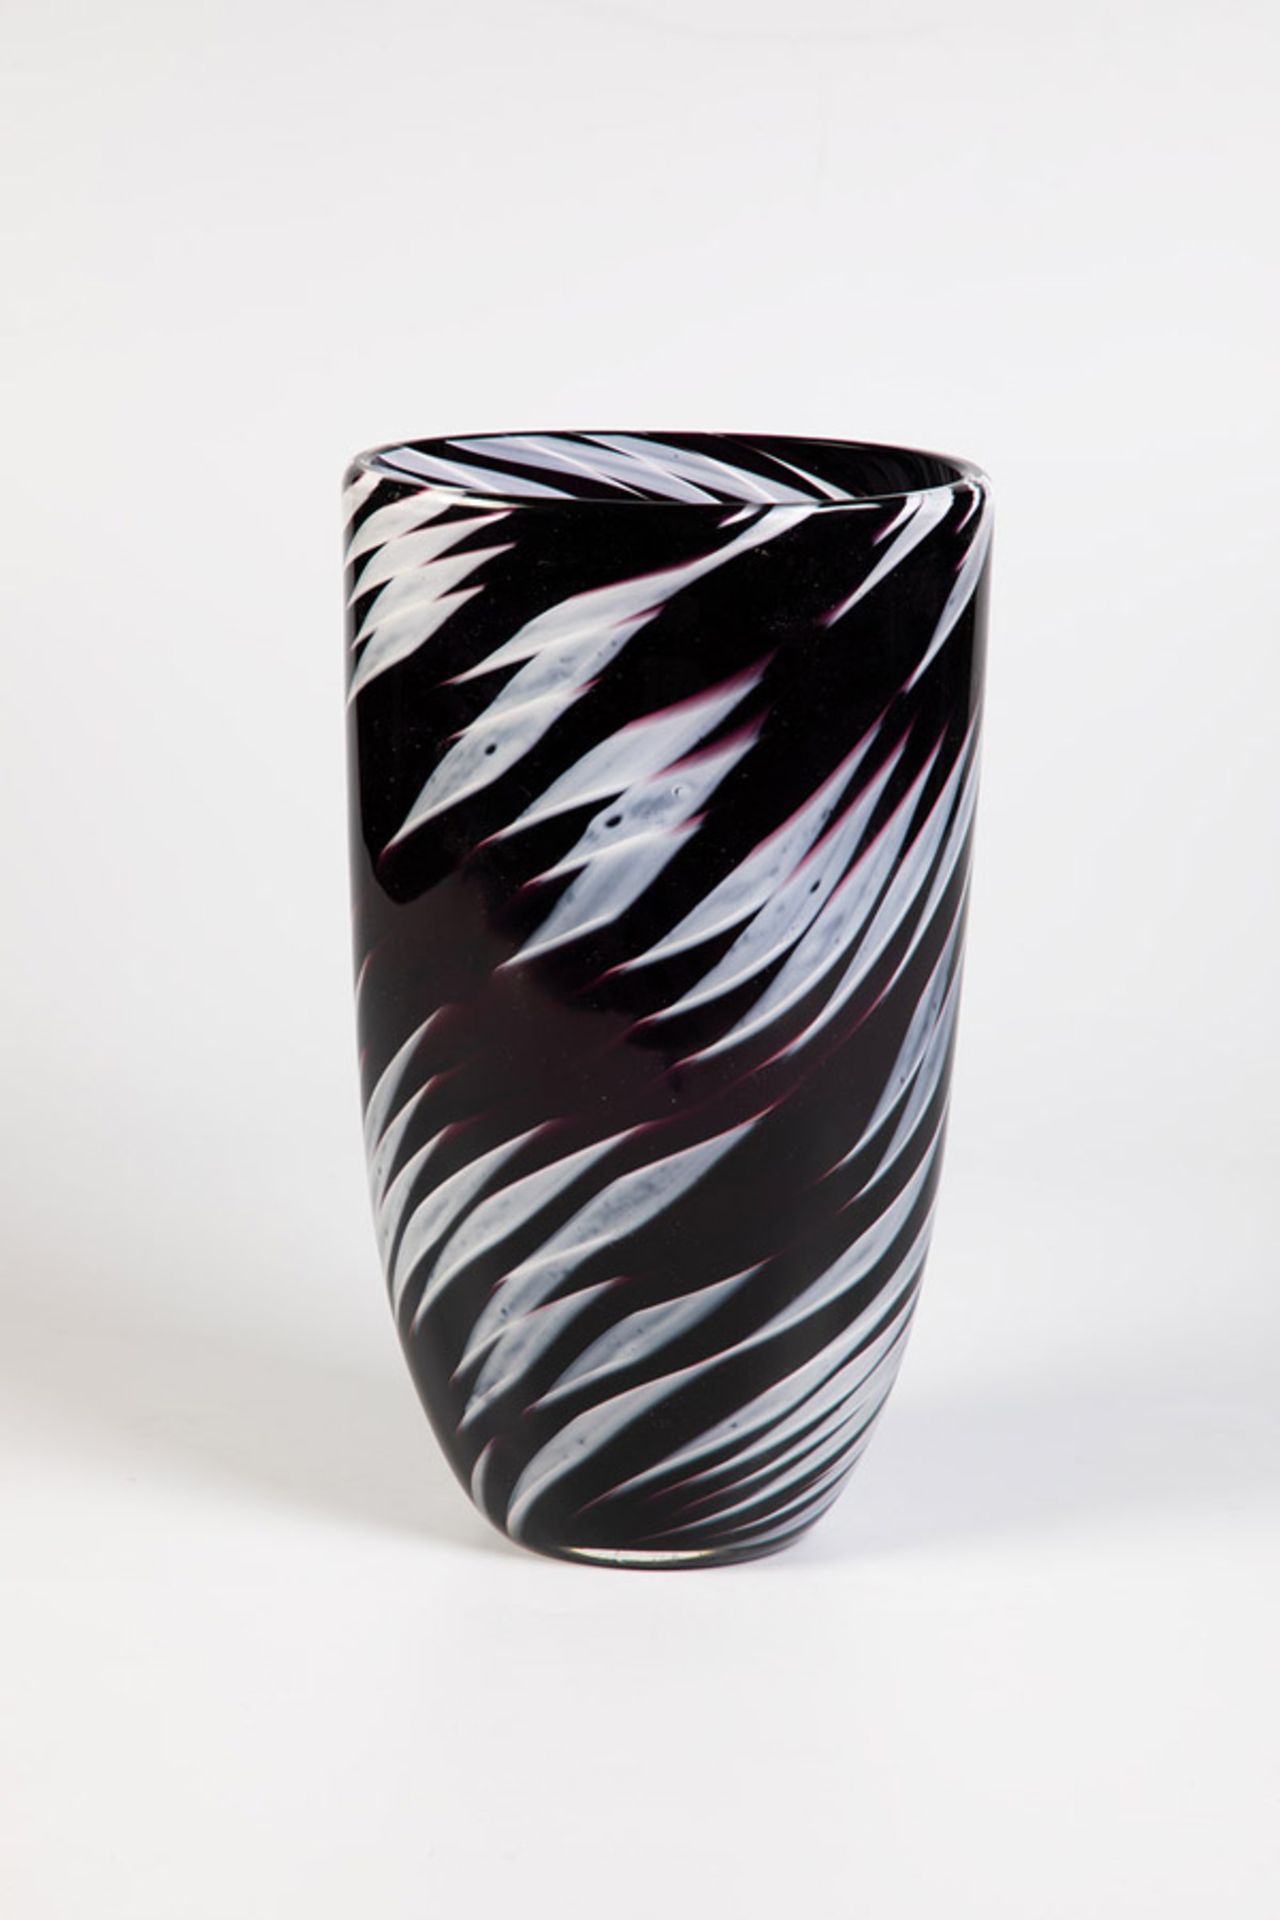 Vase "Fantasia bianco-nera"Archimede Seguso, Murano, 1958 Violettes Glas mit eingeschmolzenen